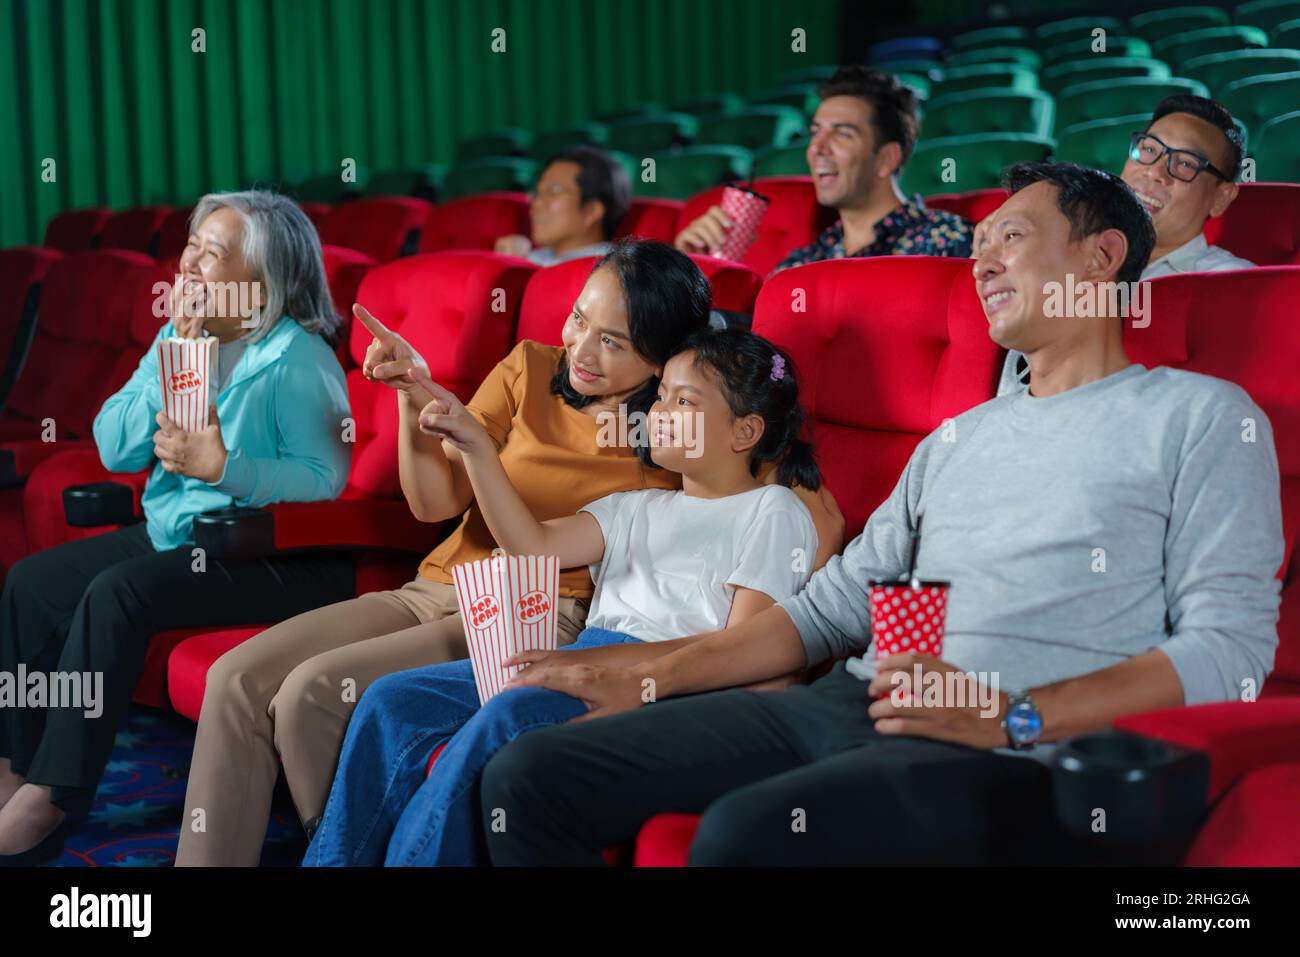 La felice famiglia asiatica di padre, madre, figlio e nonna apprezza i momenti del weekend al cinema, condividendo la gioia e la compagnia mentre guardi un film Foto Stock